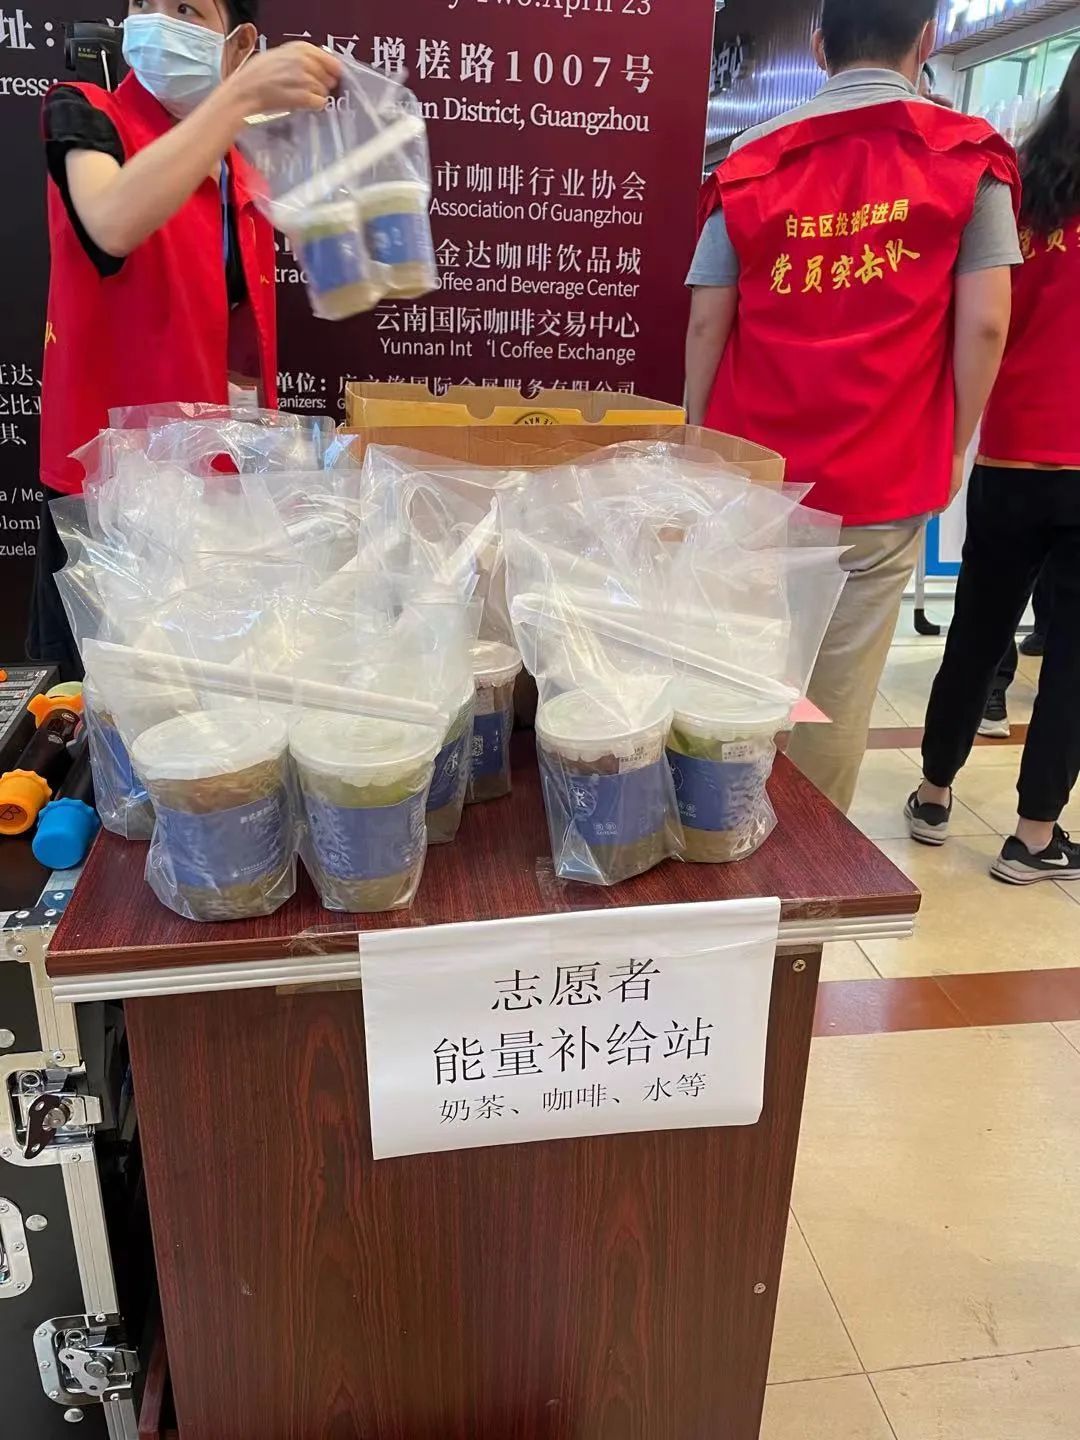 广州白云区政府相关部门向金达咖啡饮品城及众商家赠送“助力抗疫 爱心奉献”的锦旗和感谢信